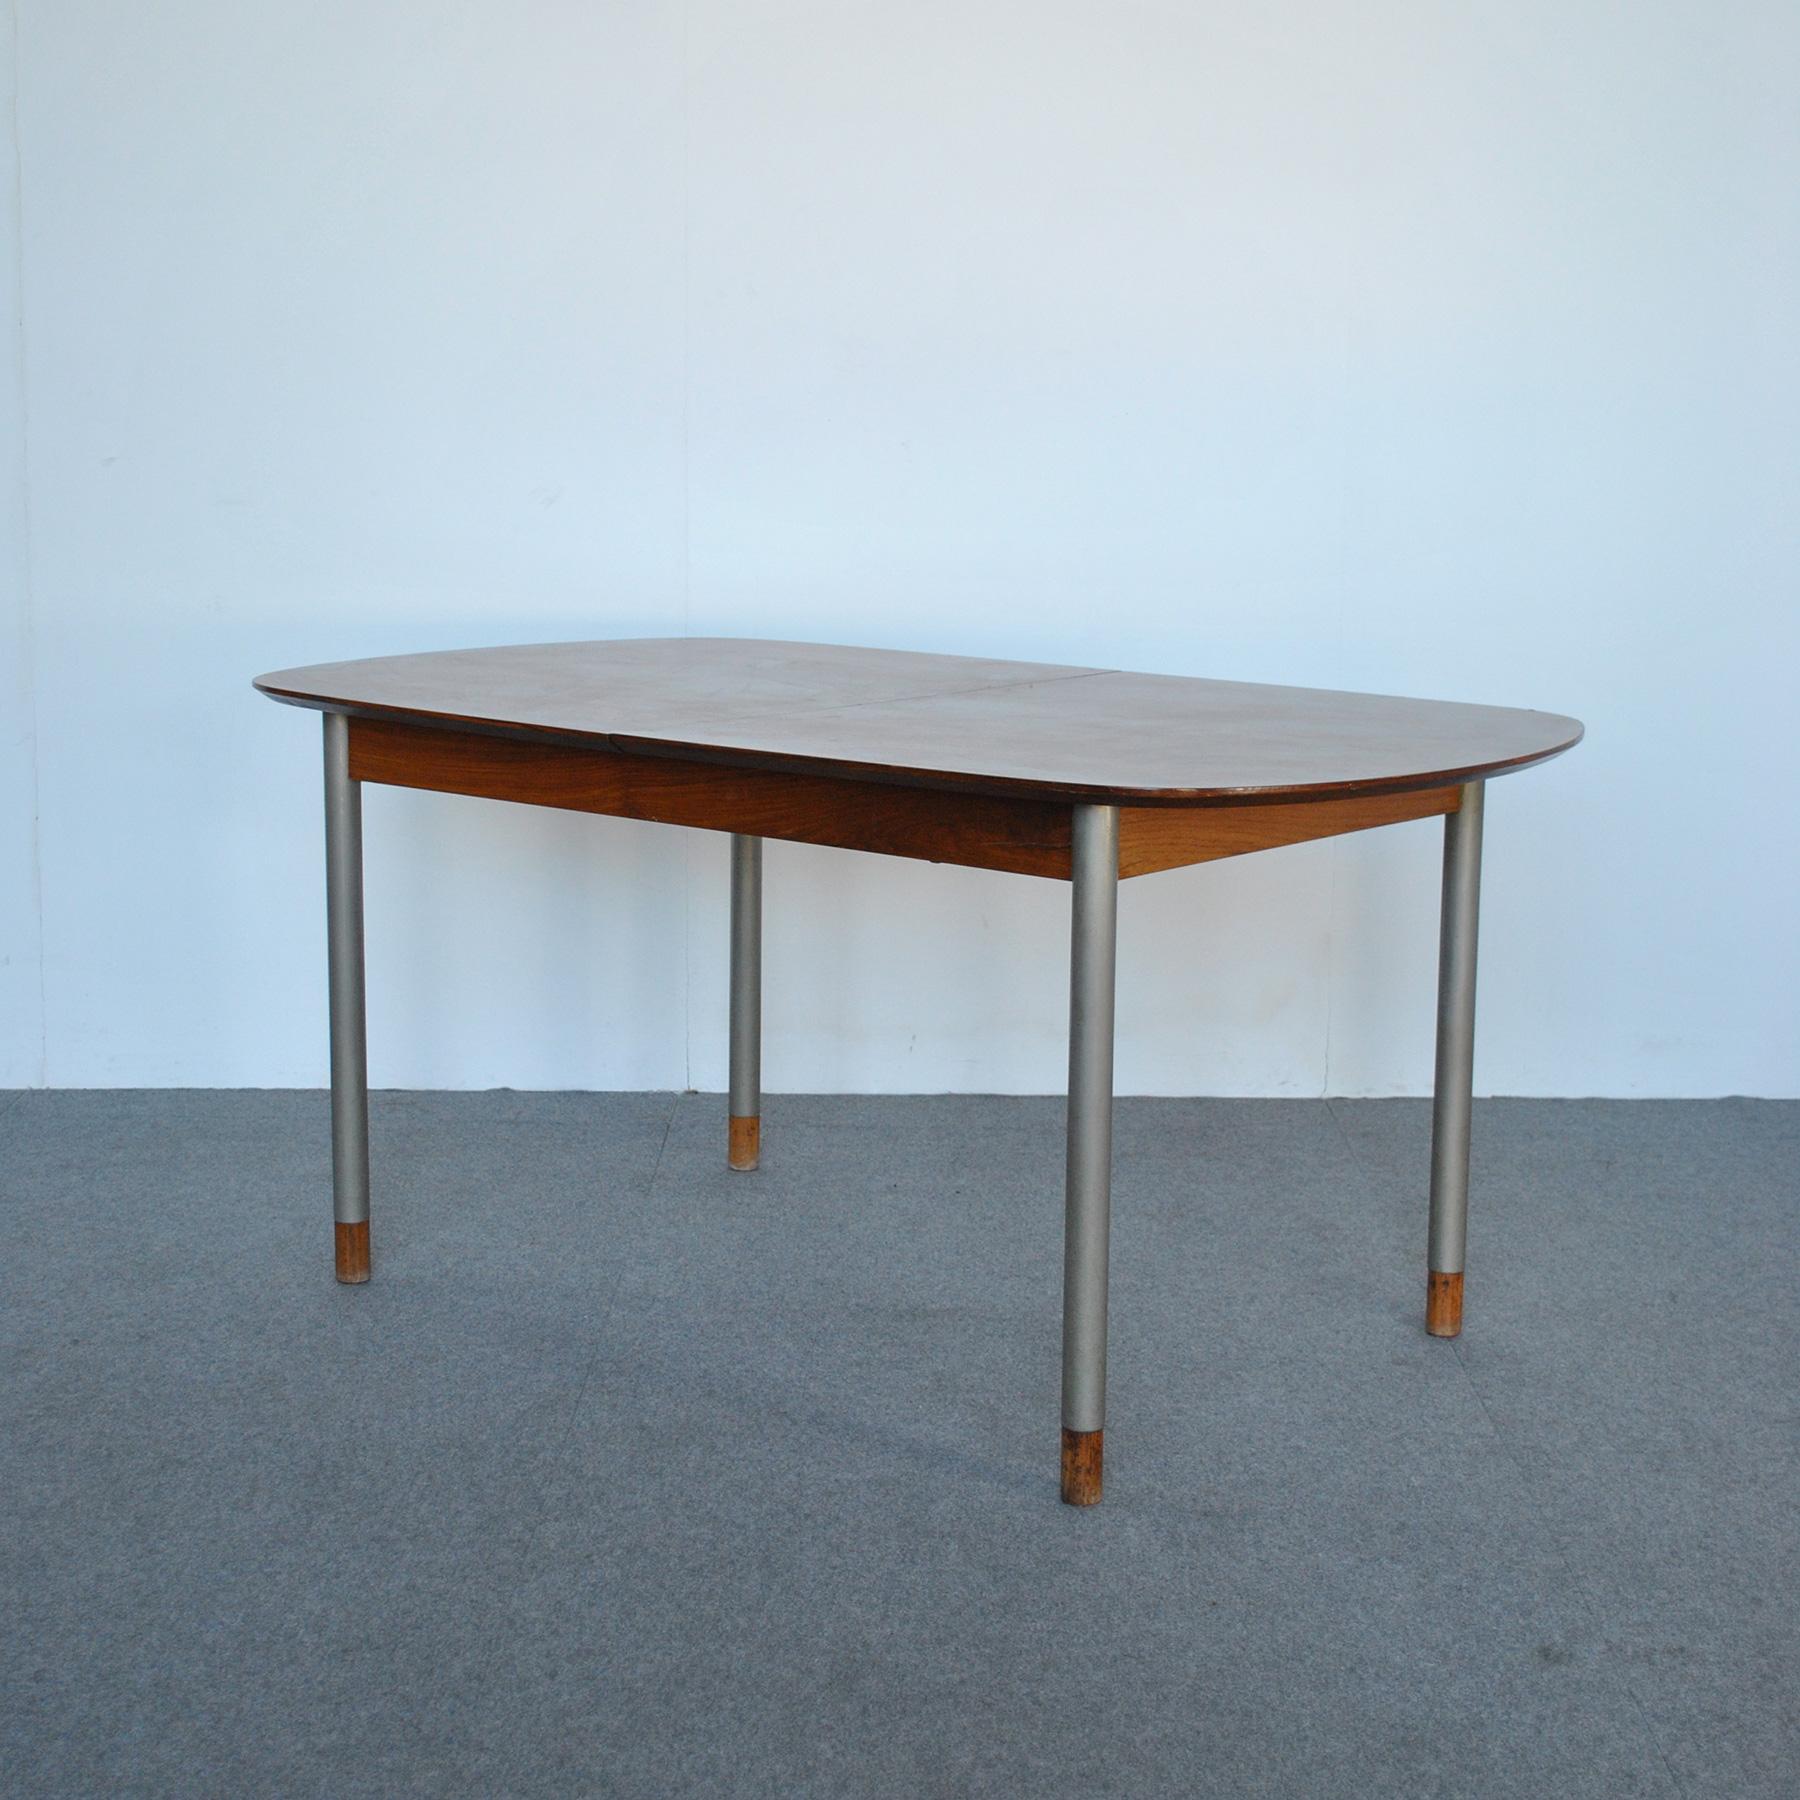 Table avec plateau en bois ouvrable et pieds en métal avec extrémités en bois, design George Coslin, production des années 1960. 
La table ouverte a une longueur maximale de 215 cm.